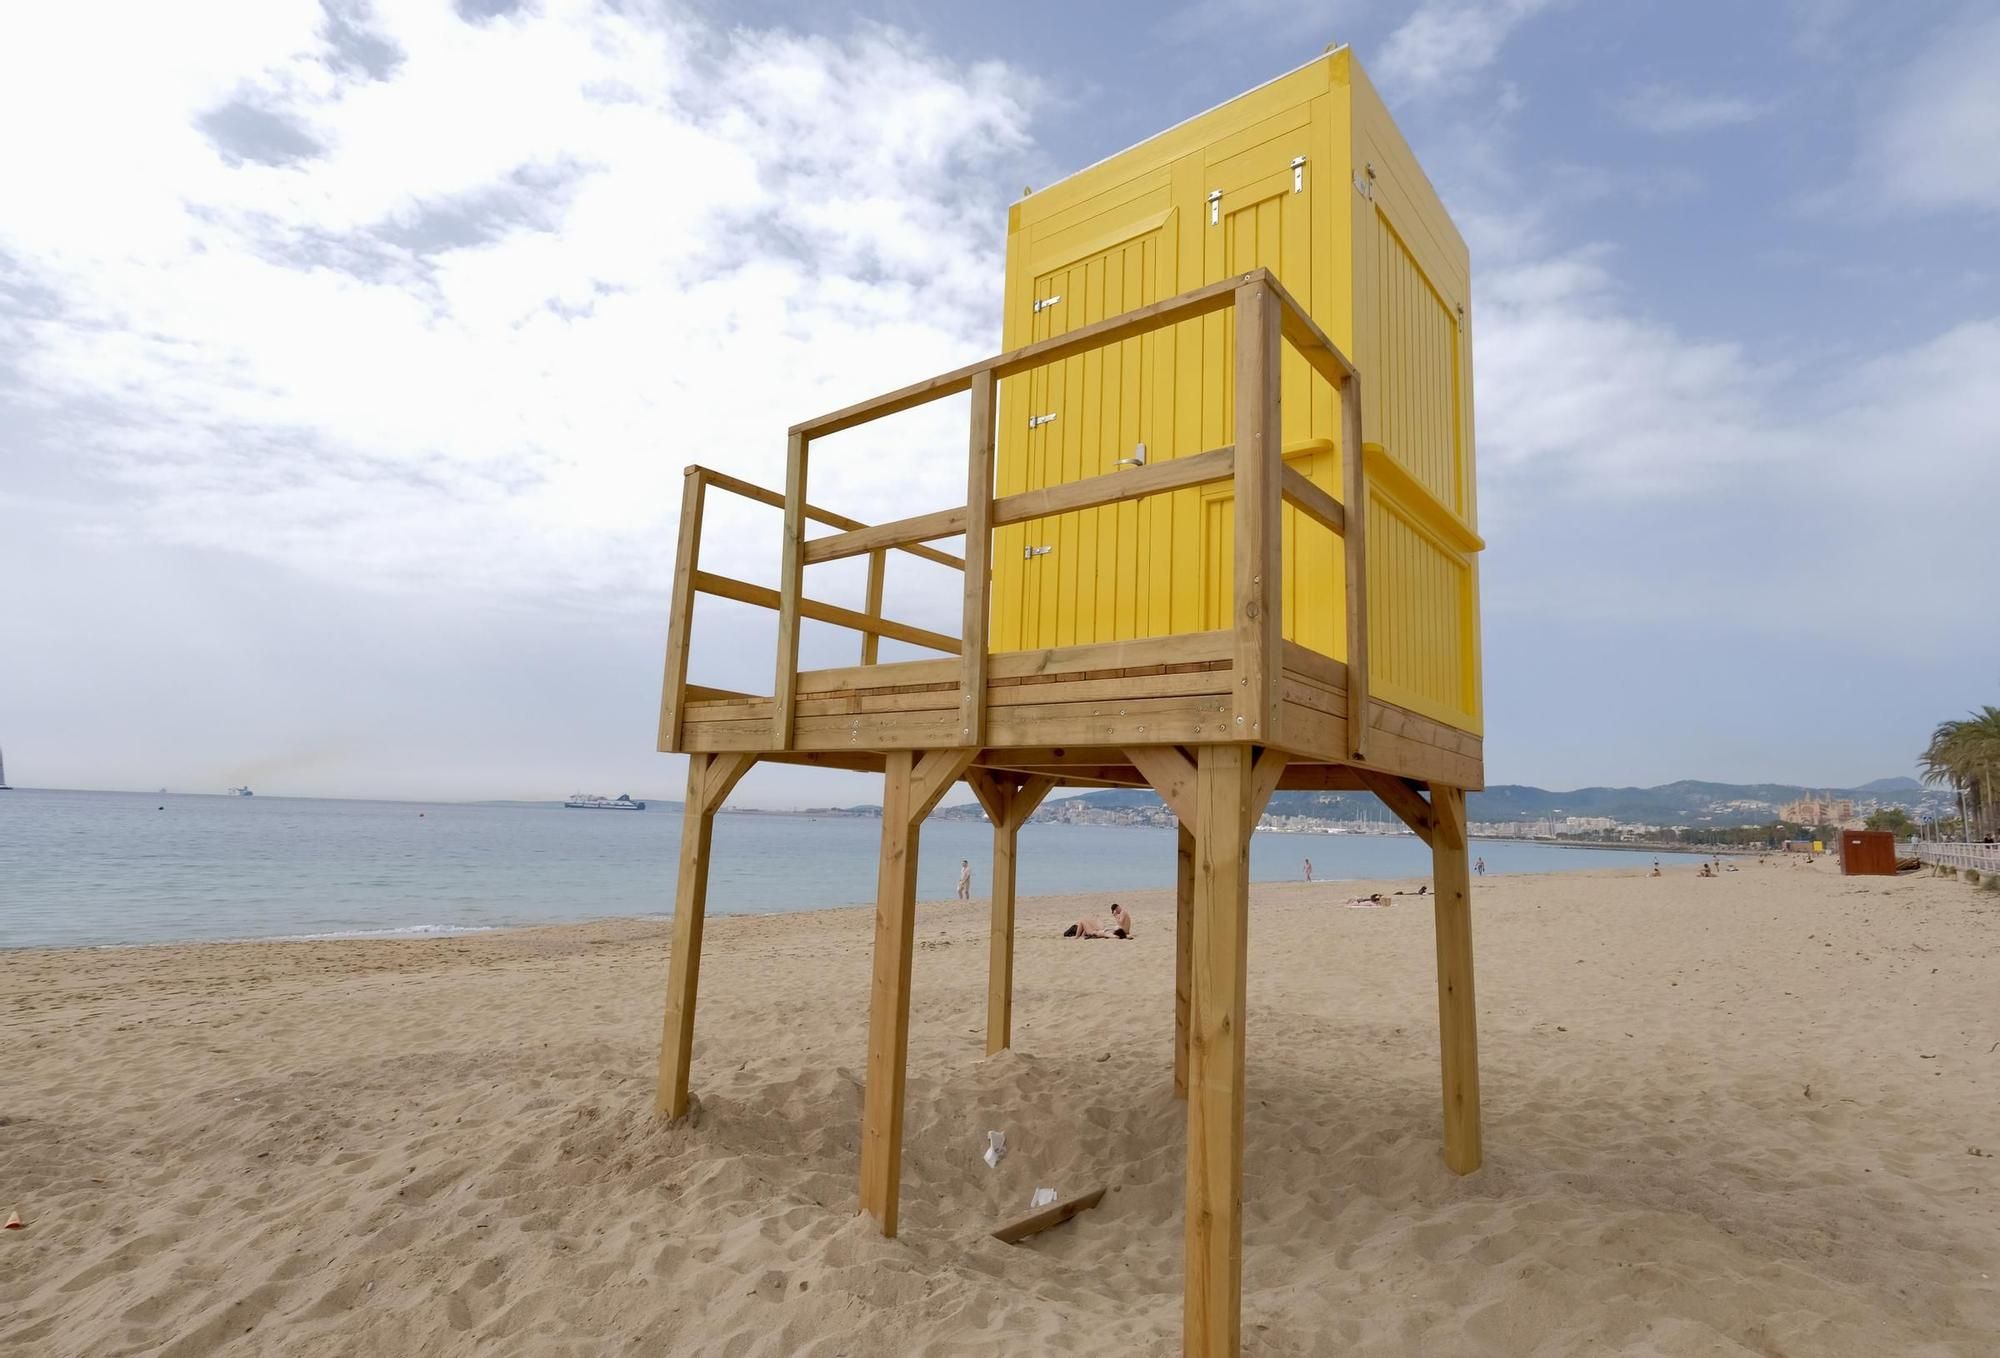 So sehen die neuen Wachtürme der Rettungsschwimmer an der Playa de Palma aus